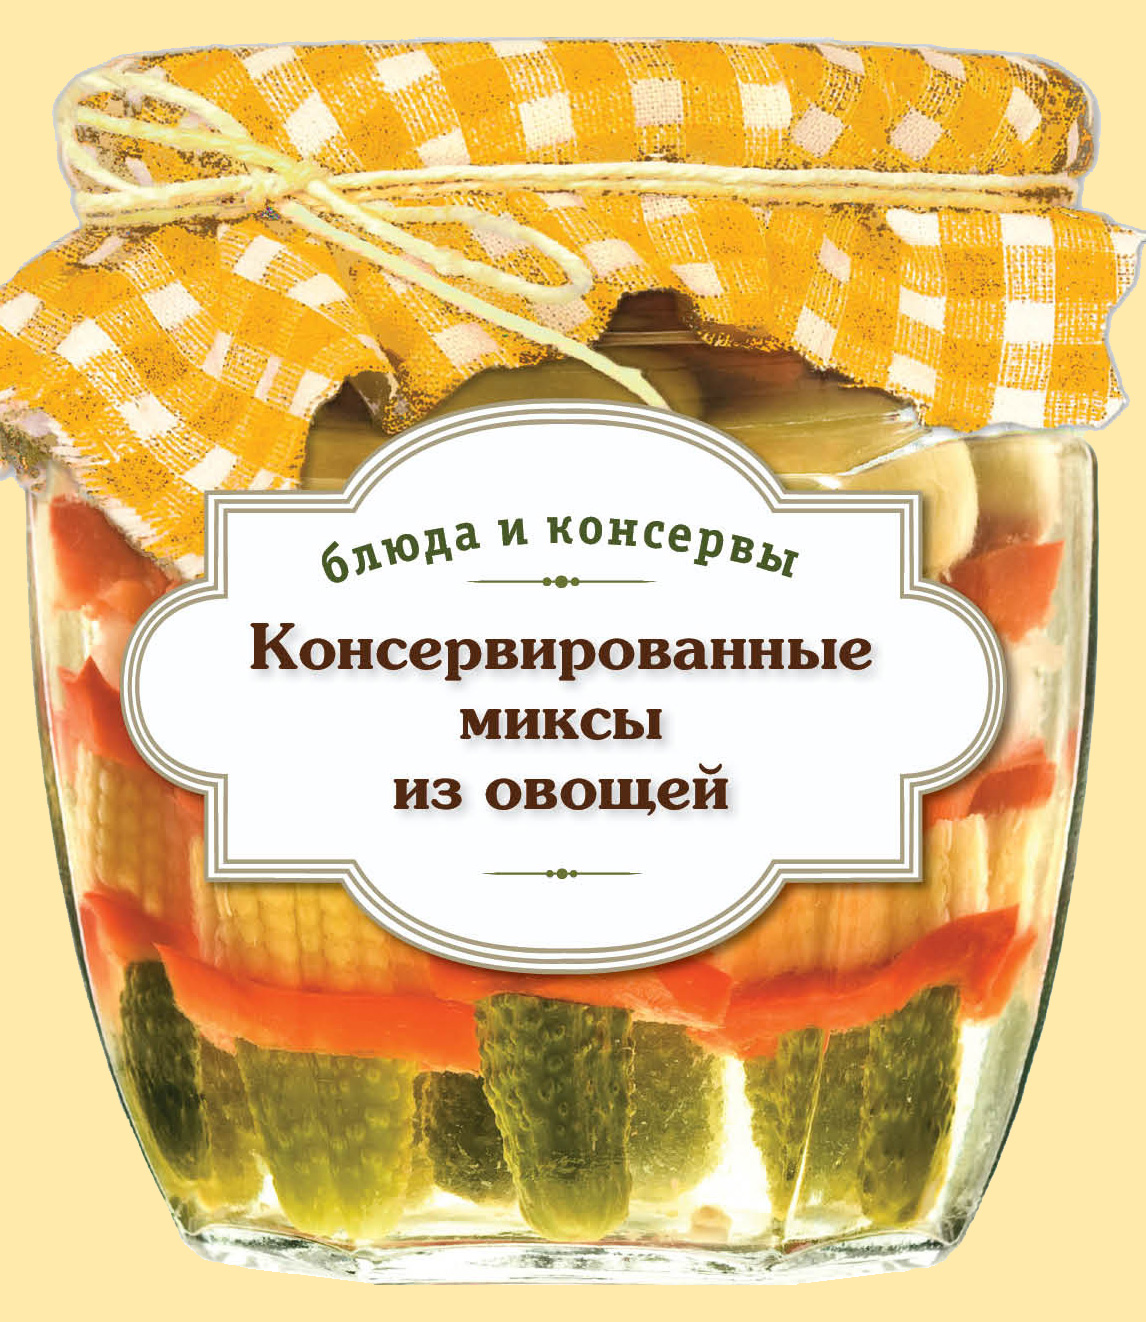 Книга Консервированные миксы из овощей из серии , созданная С. Иванова, может относится к жанру Кулинария. Стоимость электронной книги Консервированные миксы из овощей с идентификатором 6061120 составляет 24.95 руб.